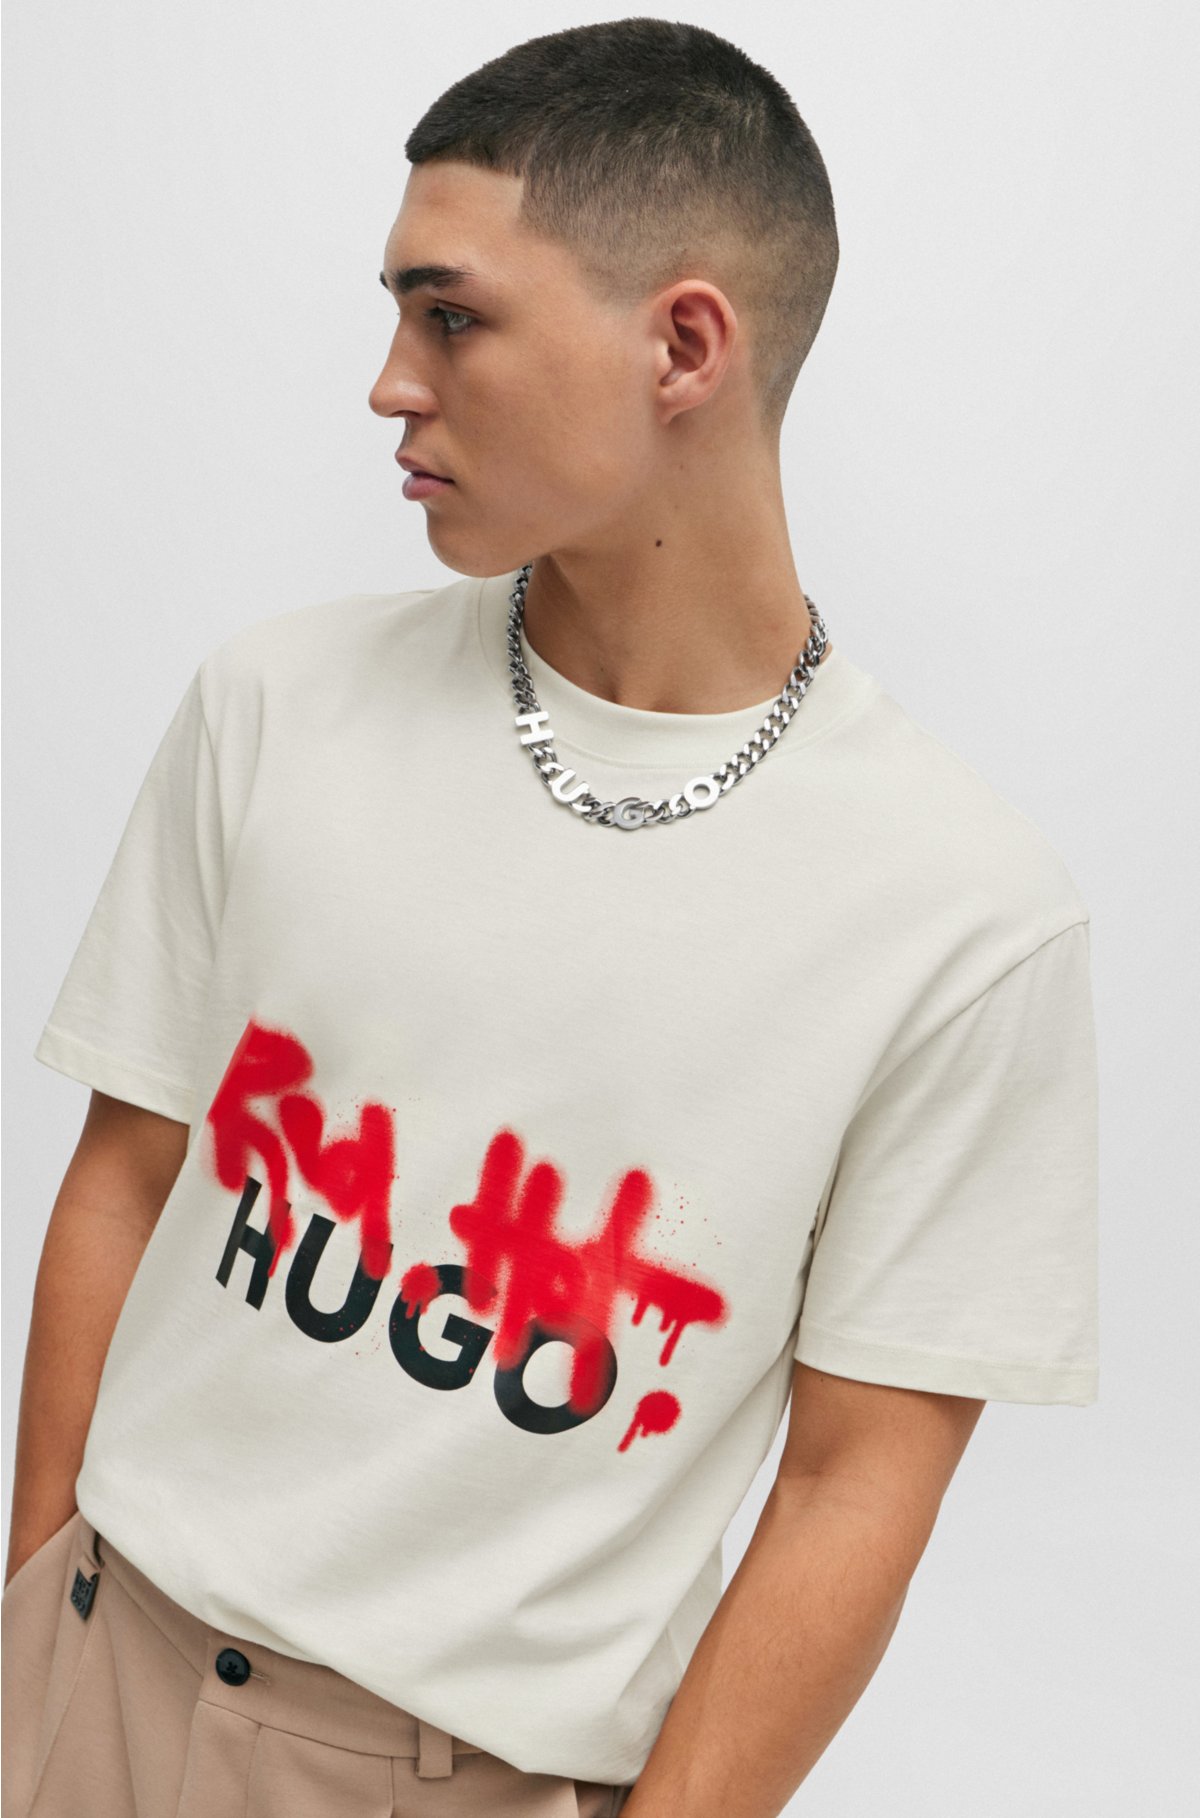 Dardini mock-neck T-shirt, HUGO